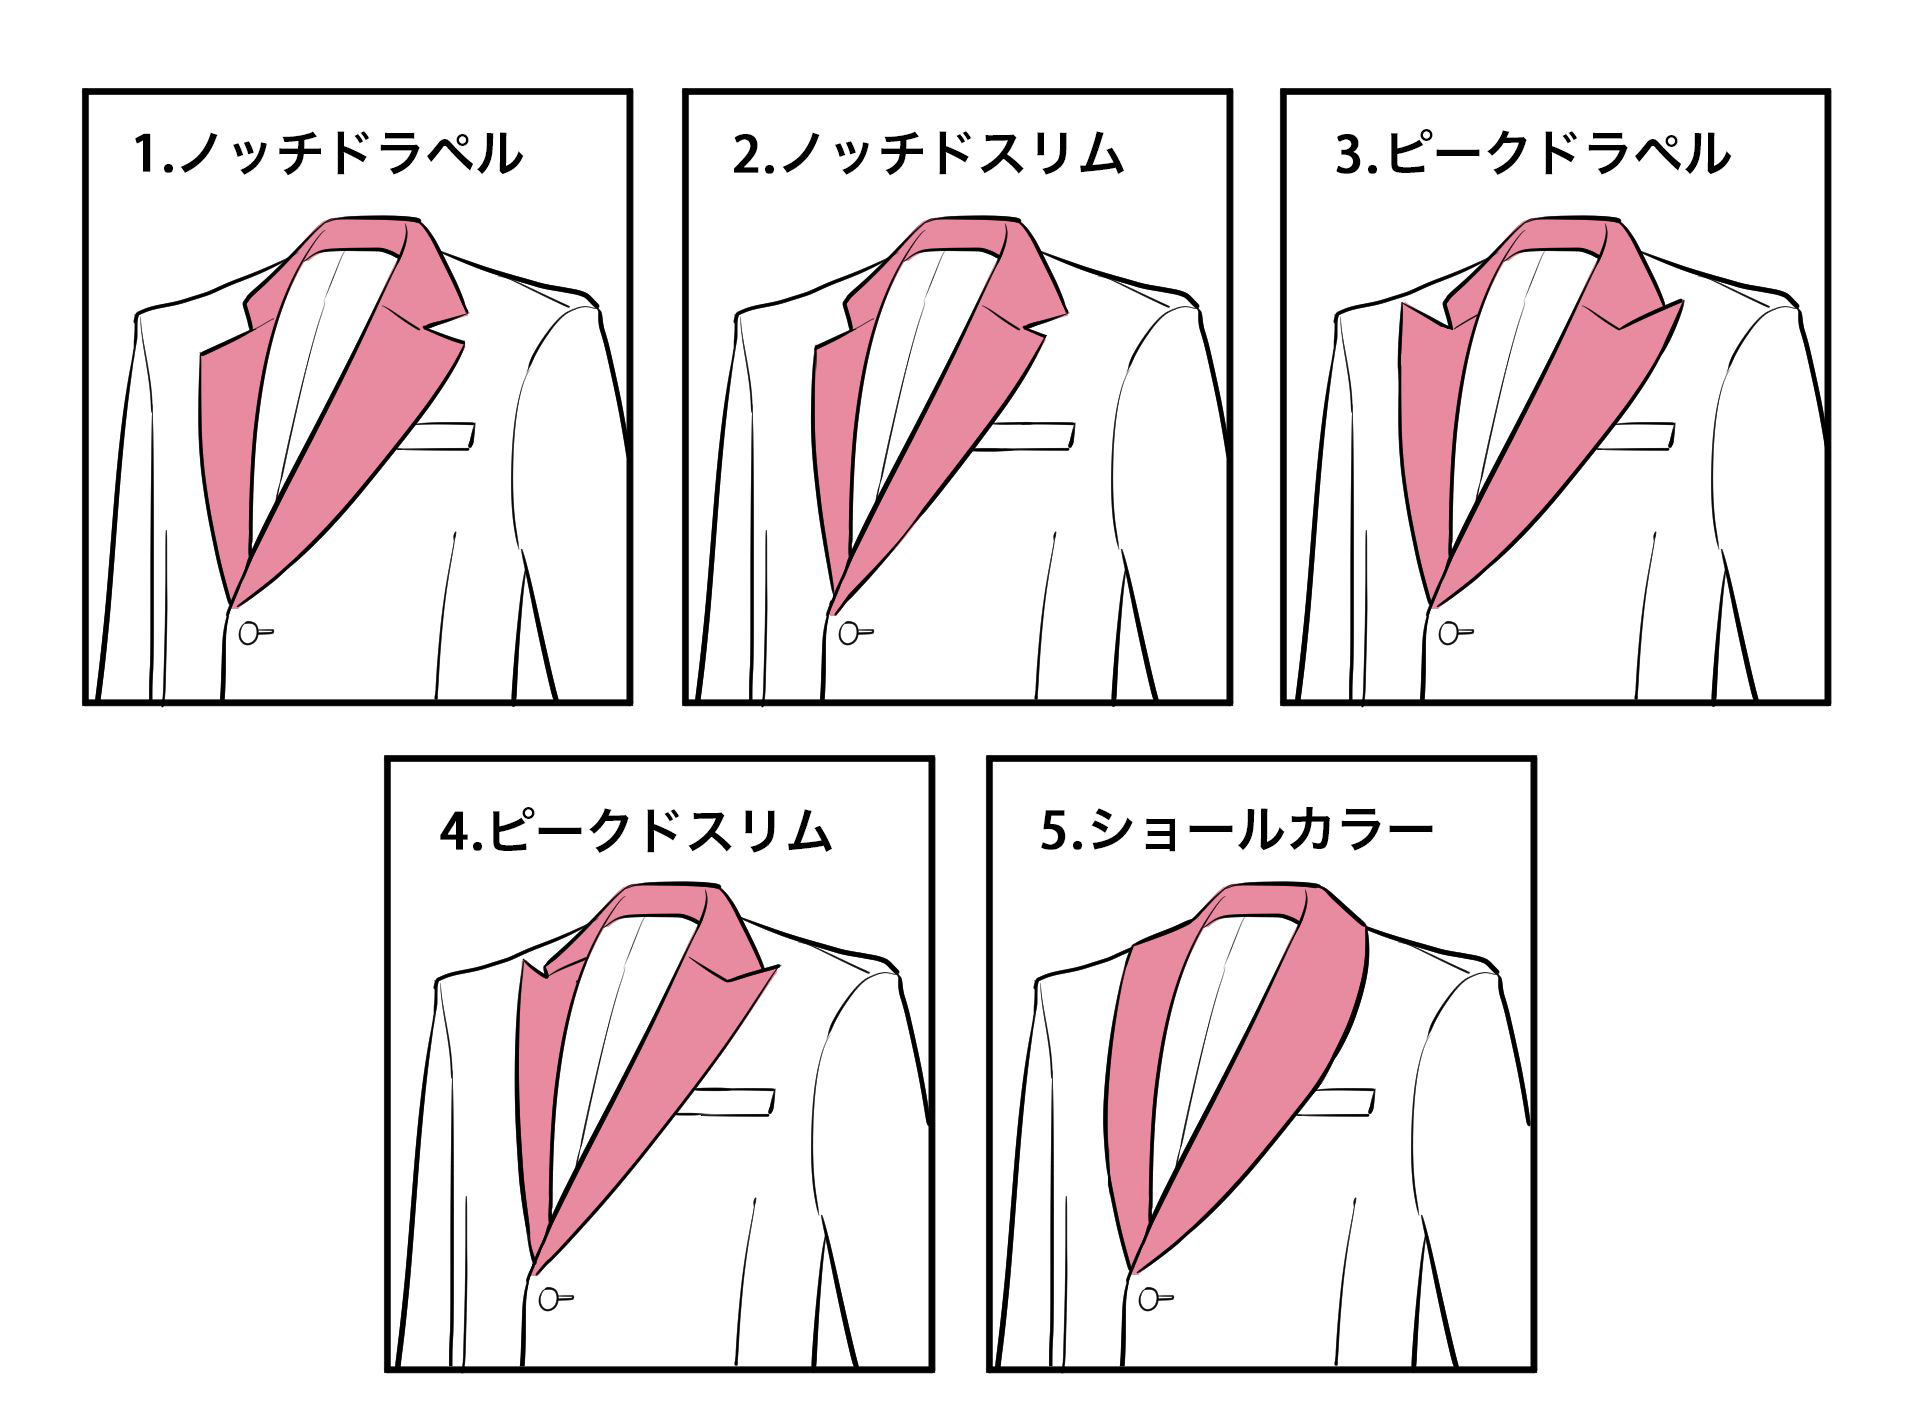 スーツ男子の描き方講座〈スーツの種類・仕組みも解説！〉 | イラスト・マンガ描き方ナビ